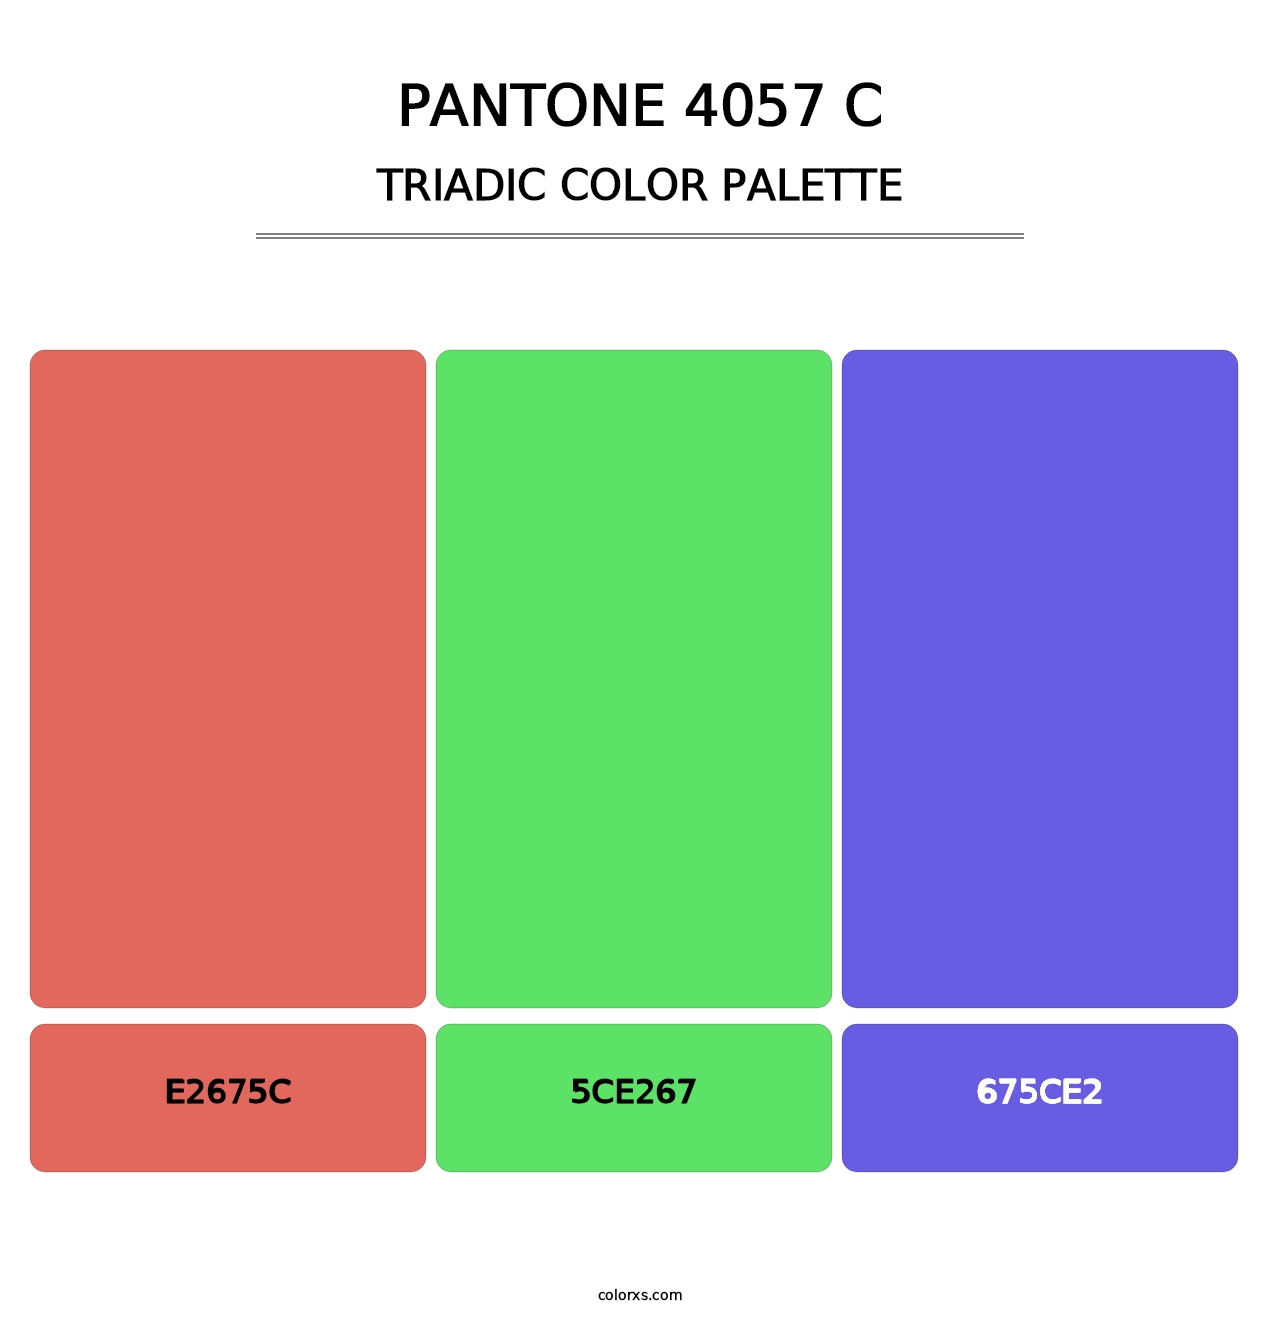 PANTONE 4057 C - Triadic Color Palette